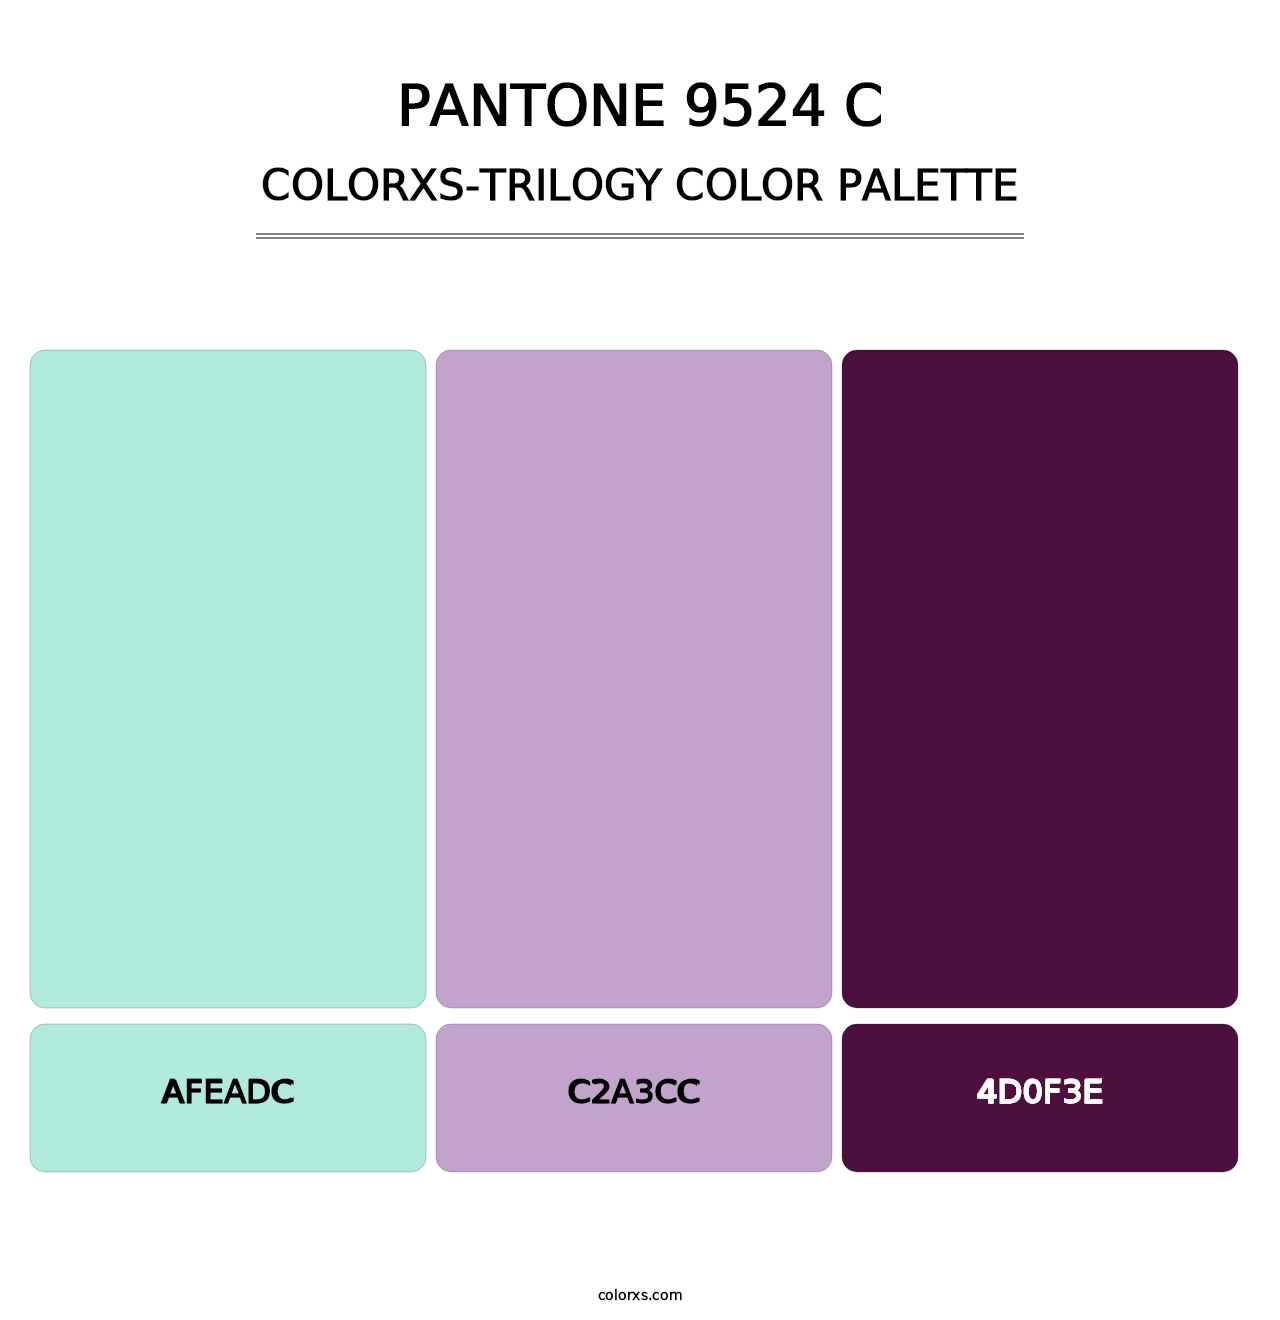 PANTONE 9524 C - Colorxs Trilogy Palette